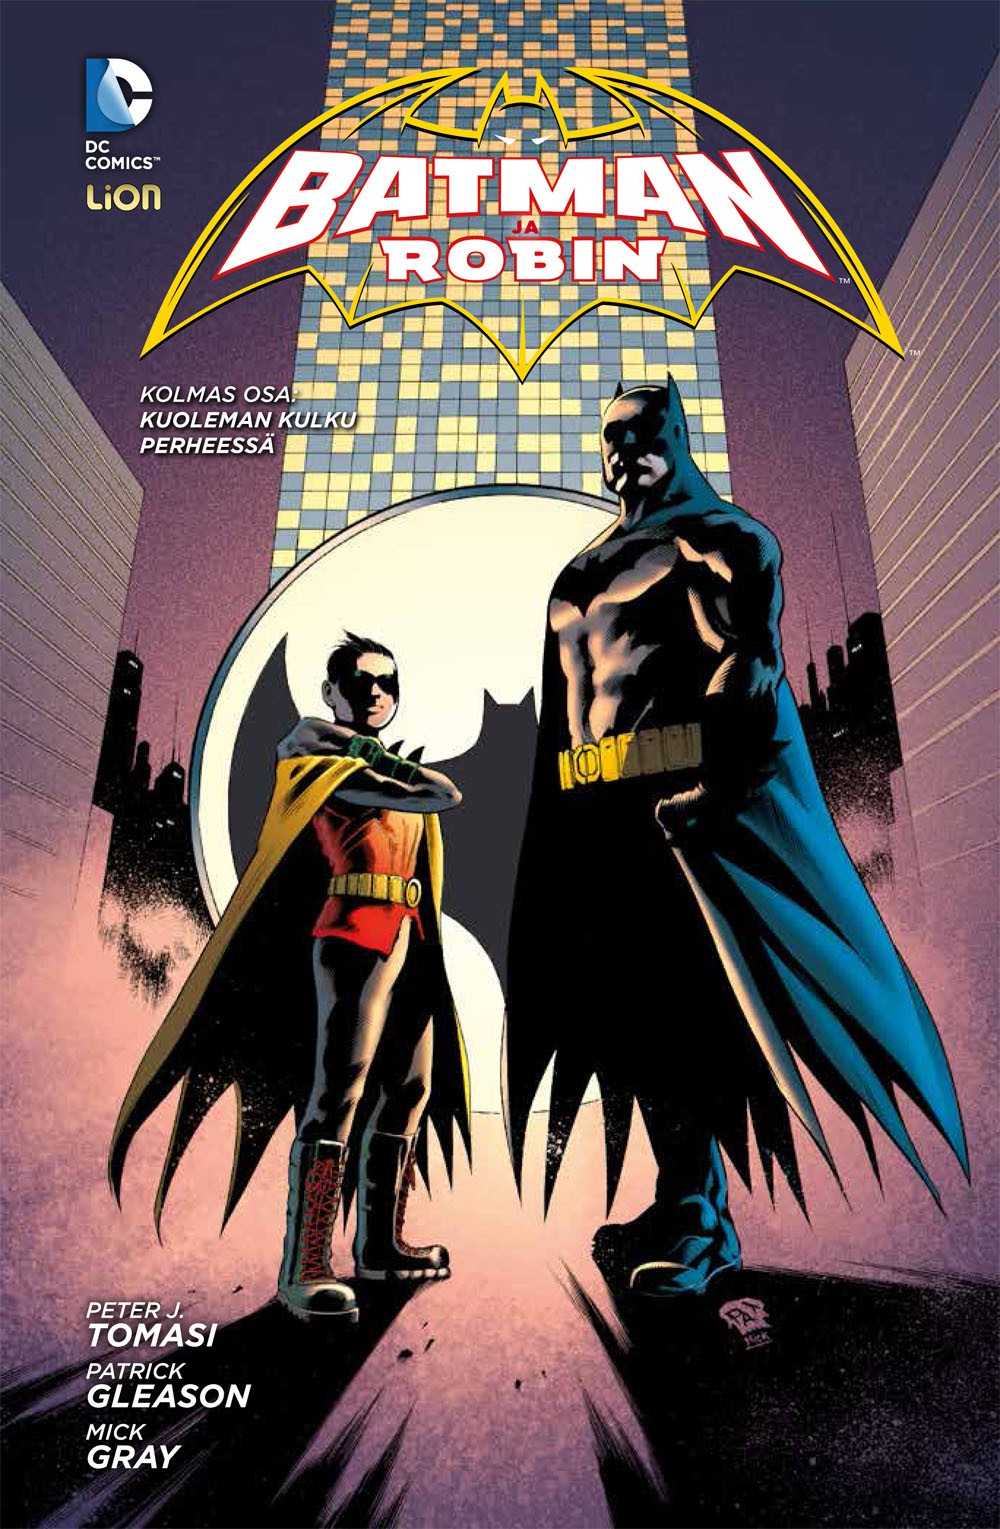 Batman ja Robin 3 - Kuoleman kulku perheessä